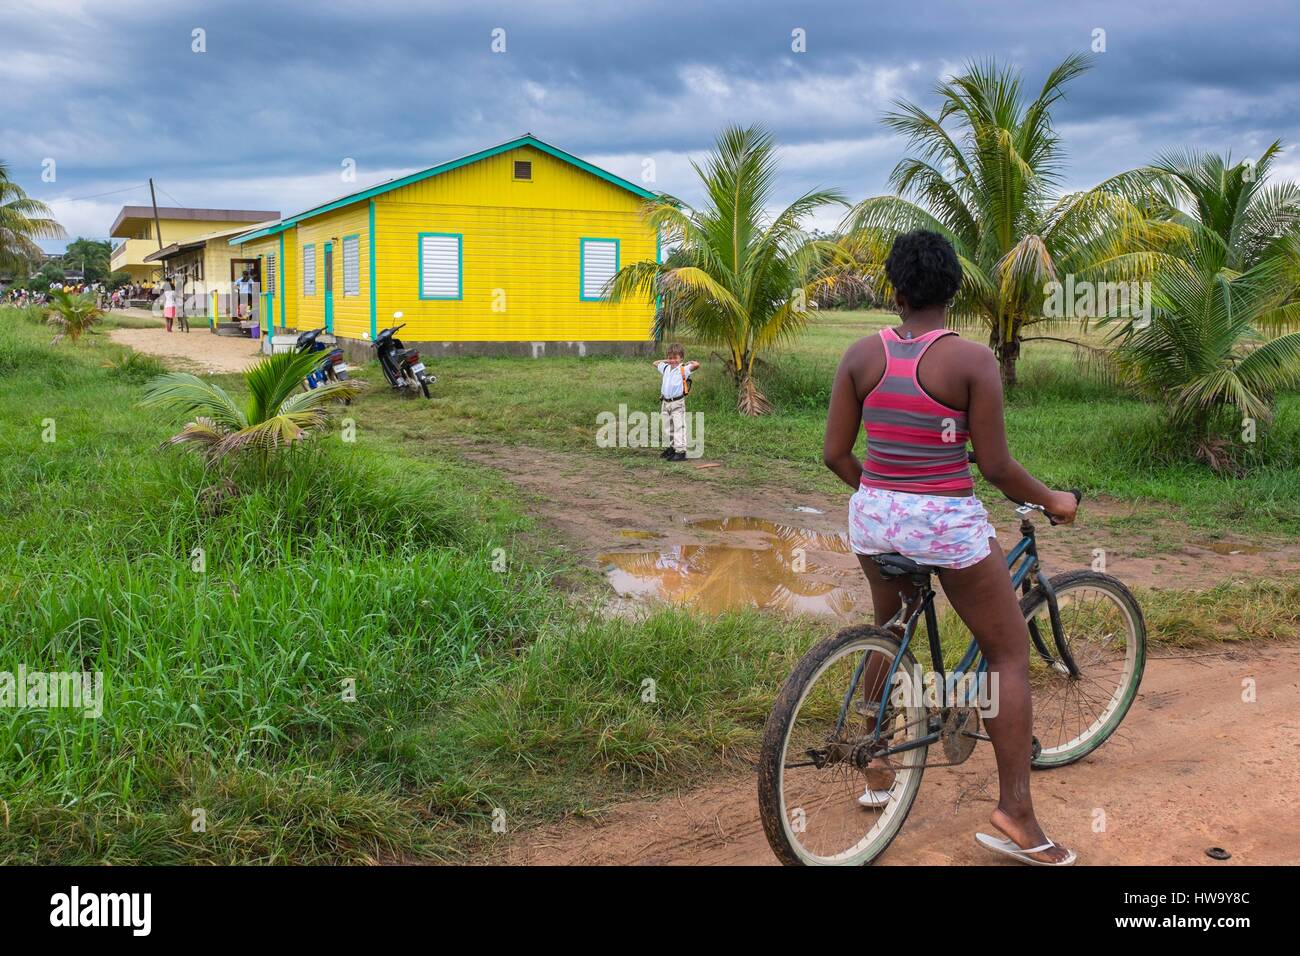 Belize, Stann Creek district, Hopkins, garifuna piccolo villaggio di pescatori, sulla strada per la scuola Foto Stock